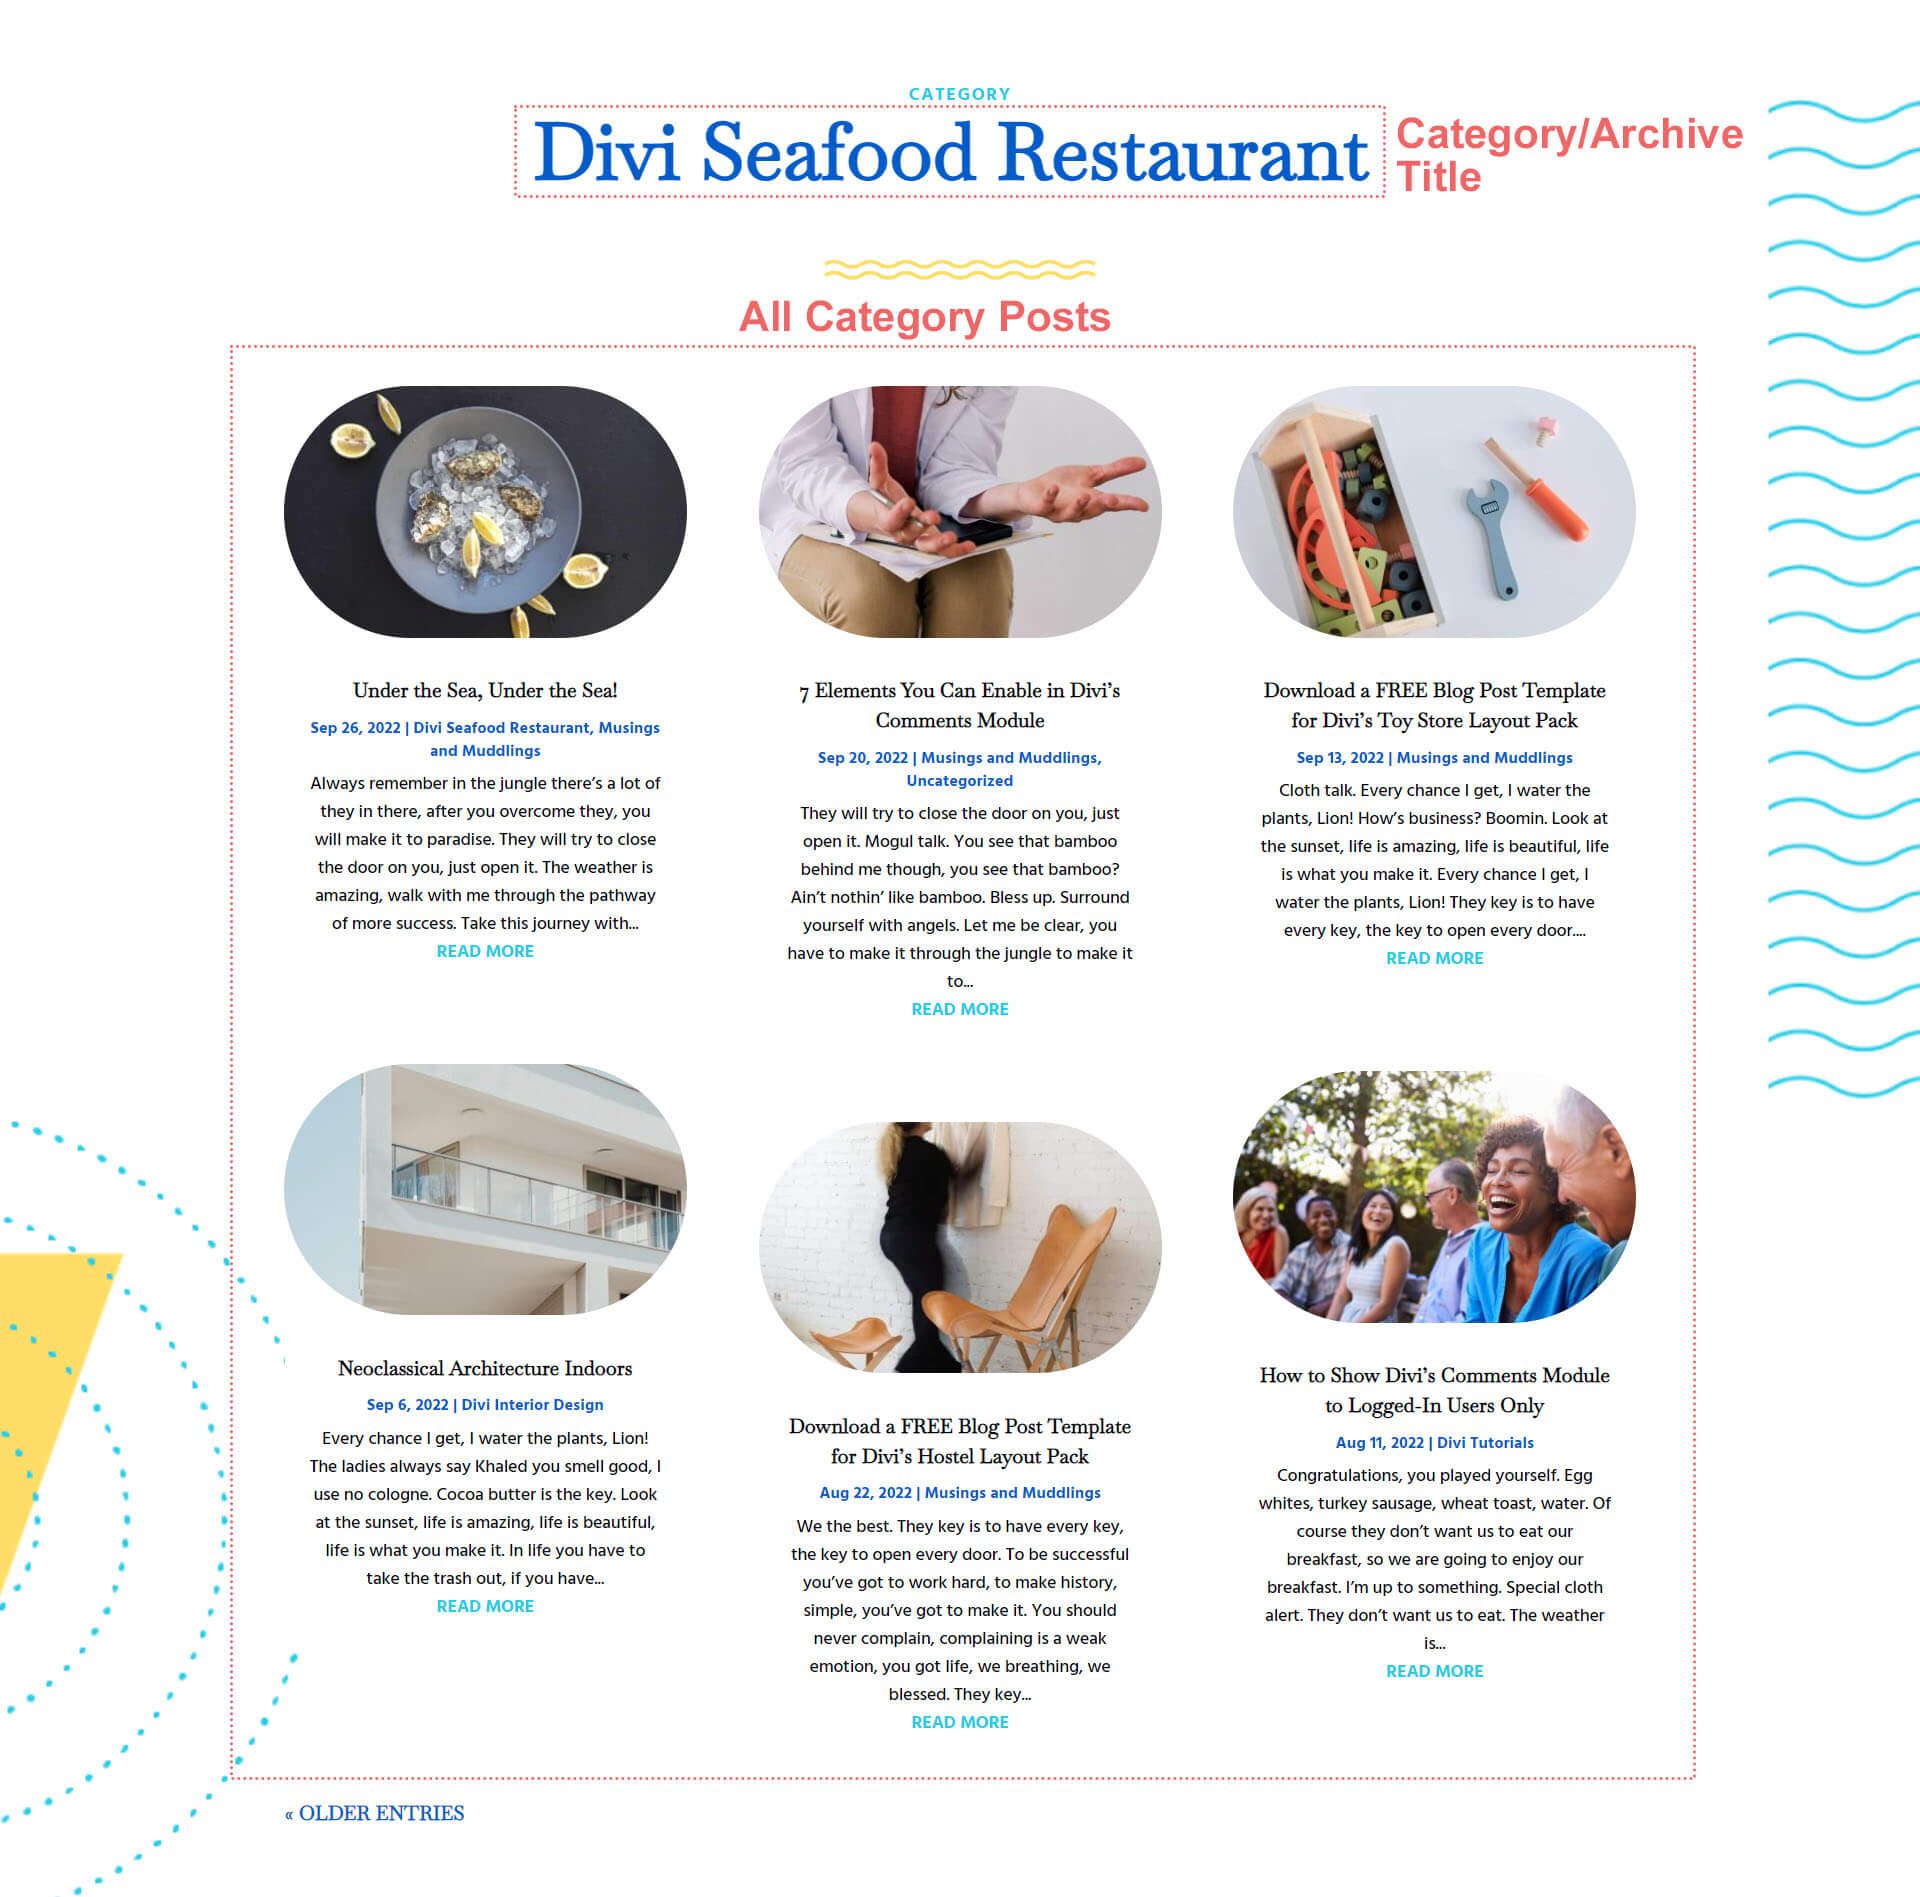 نمای کلی قالب صفحه رستوران غذاهای دریایی Divi